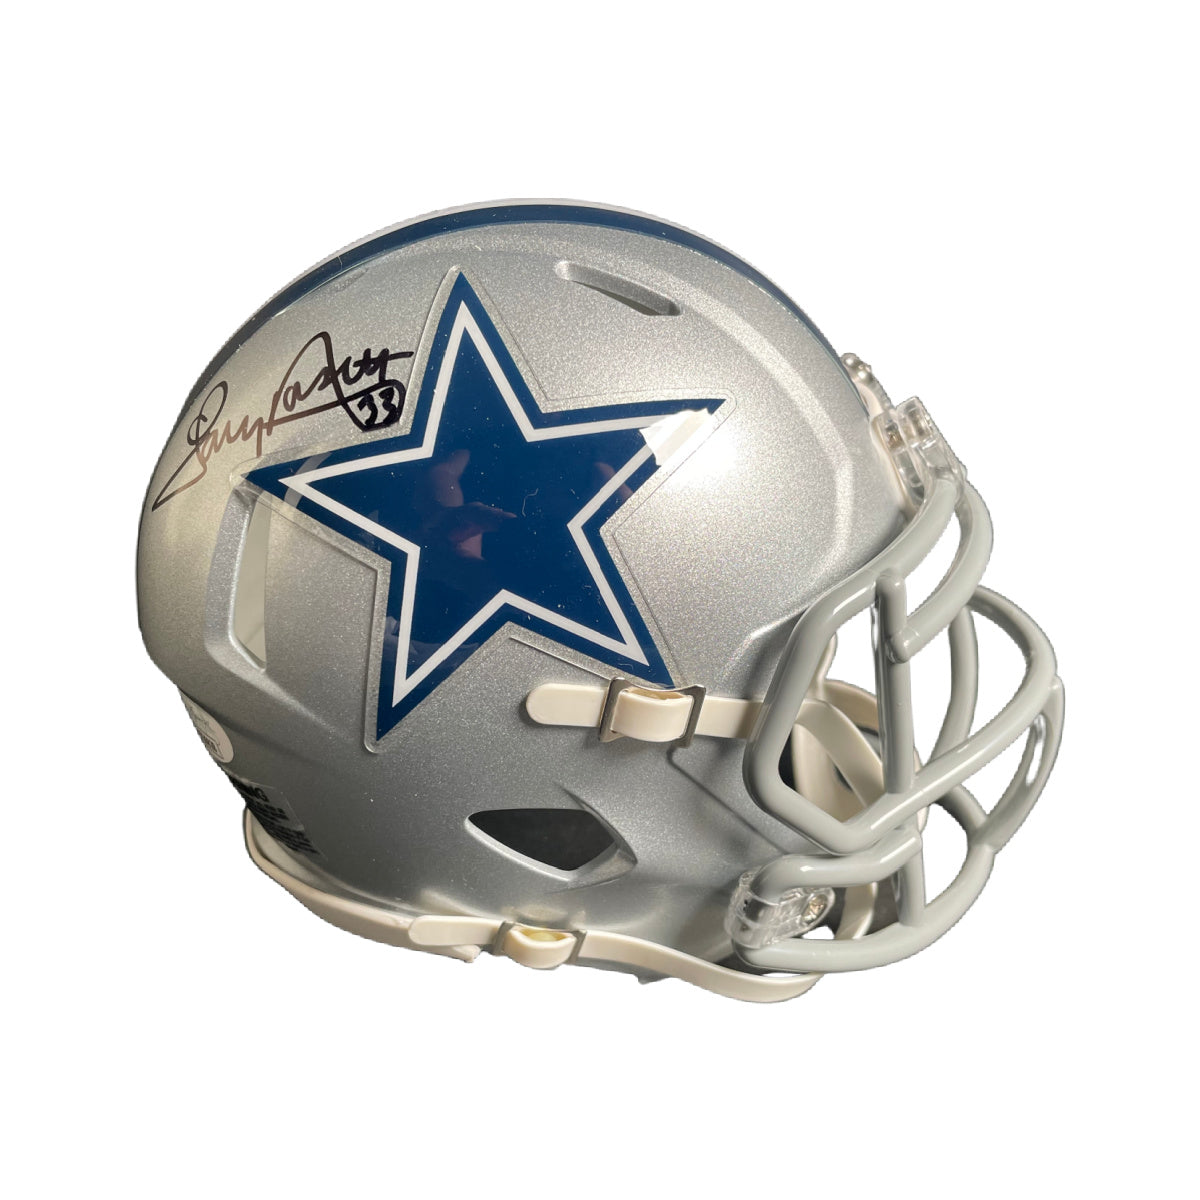 Tony Dorsett Signed Dallas Cowboys Mini Helmet Autographed JSA COA